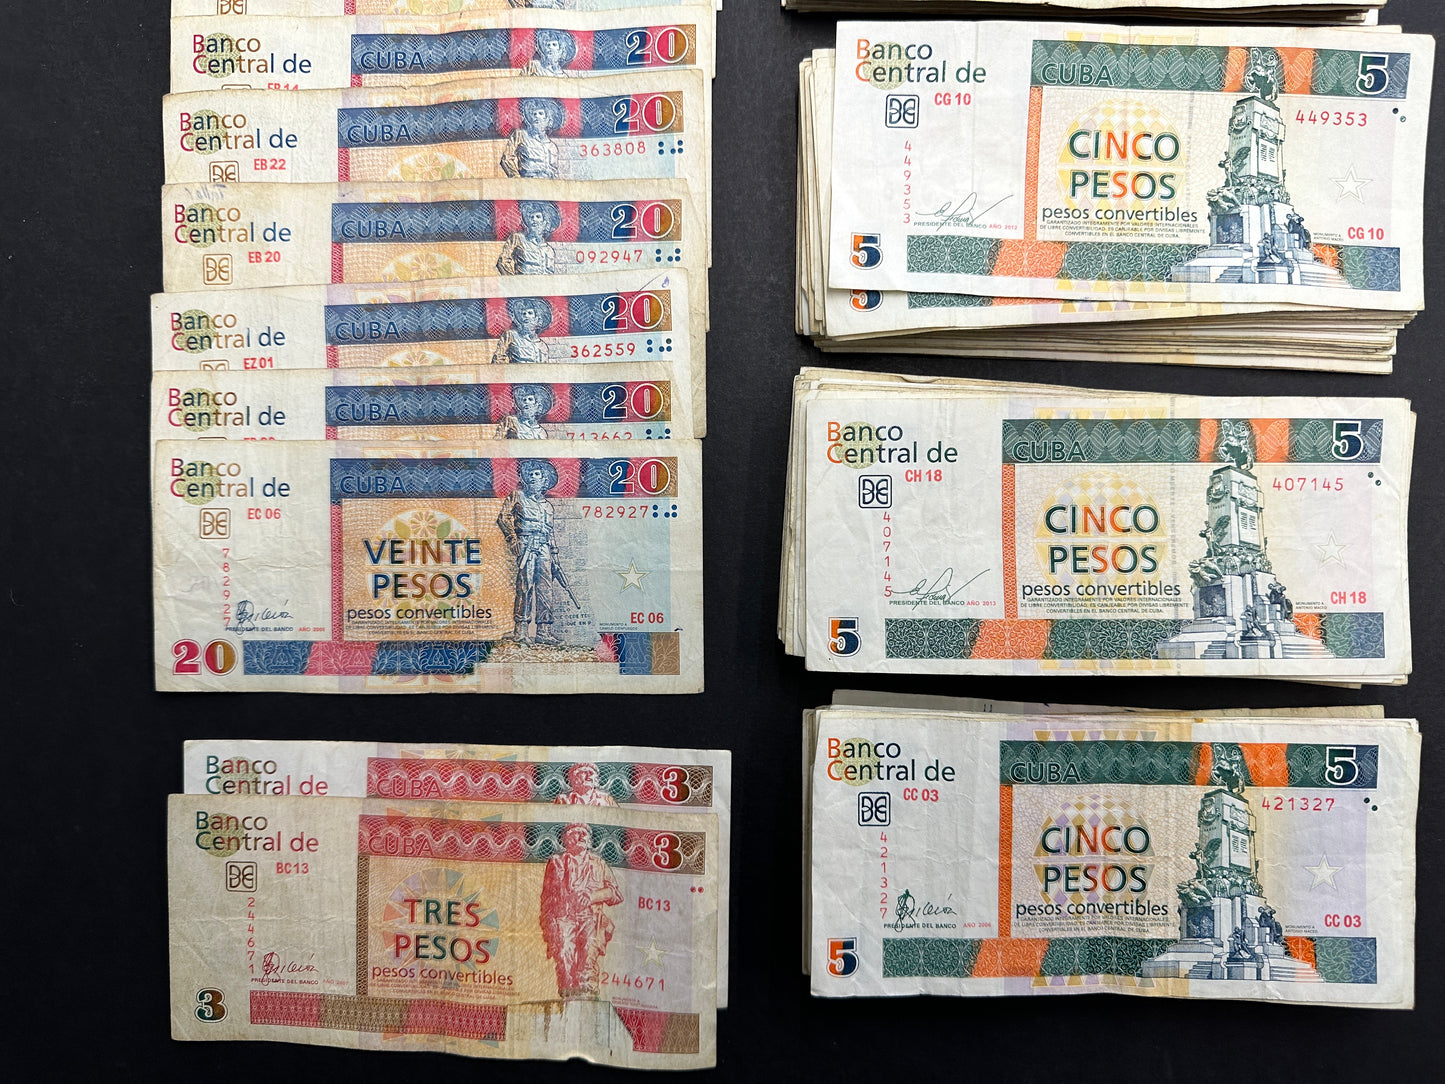 1100 Cuban Convertible Pesos (CUC) - Collectable banknotes - FREE SHIPPING